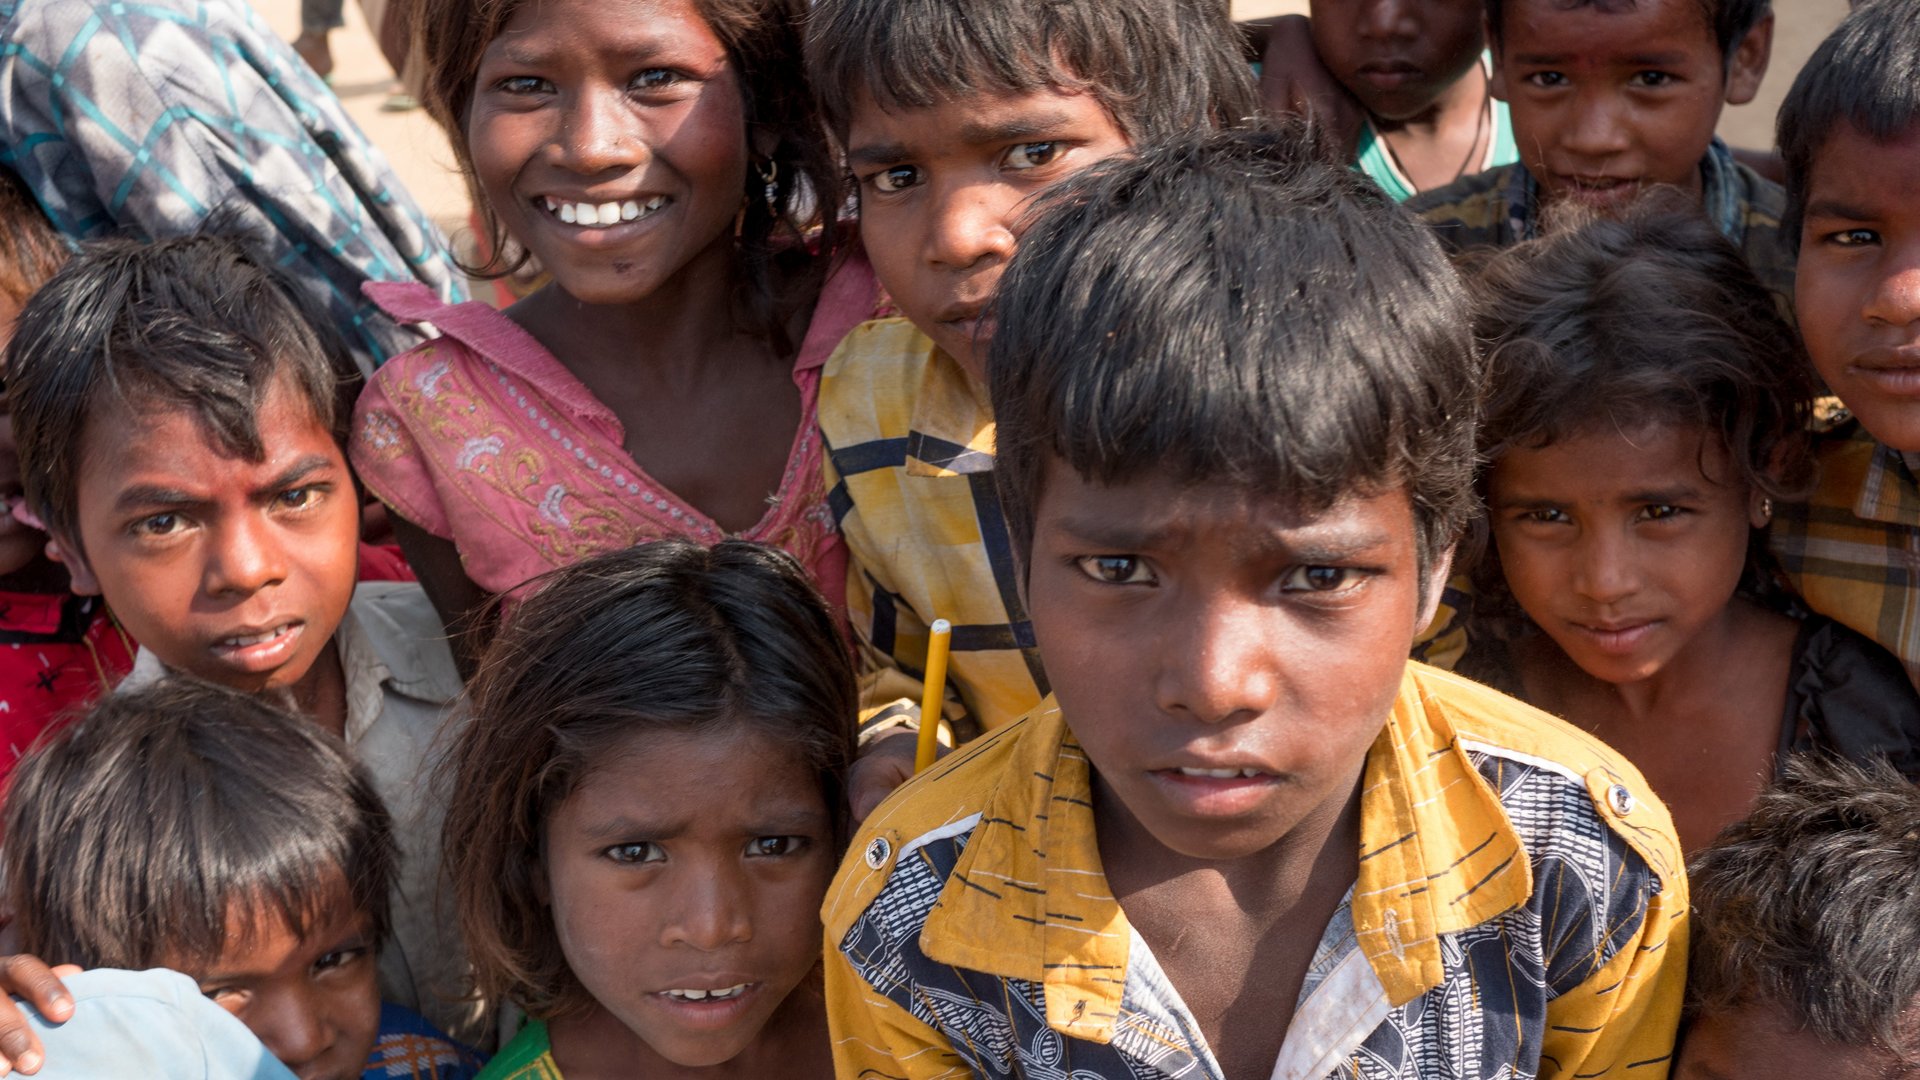 Indien: Kinder in einer Gruppe